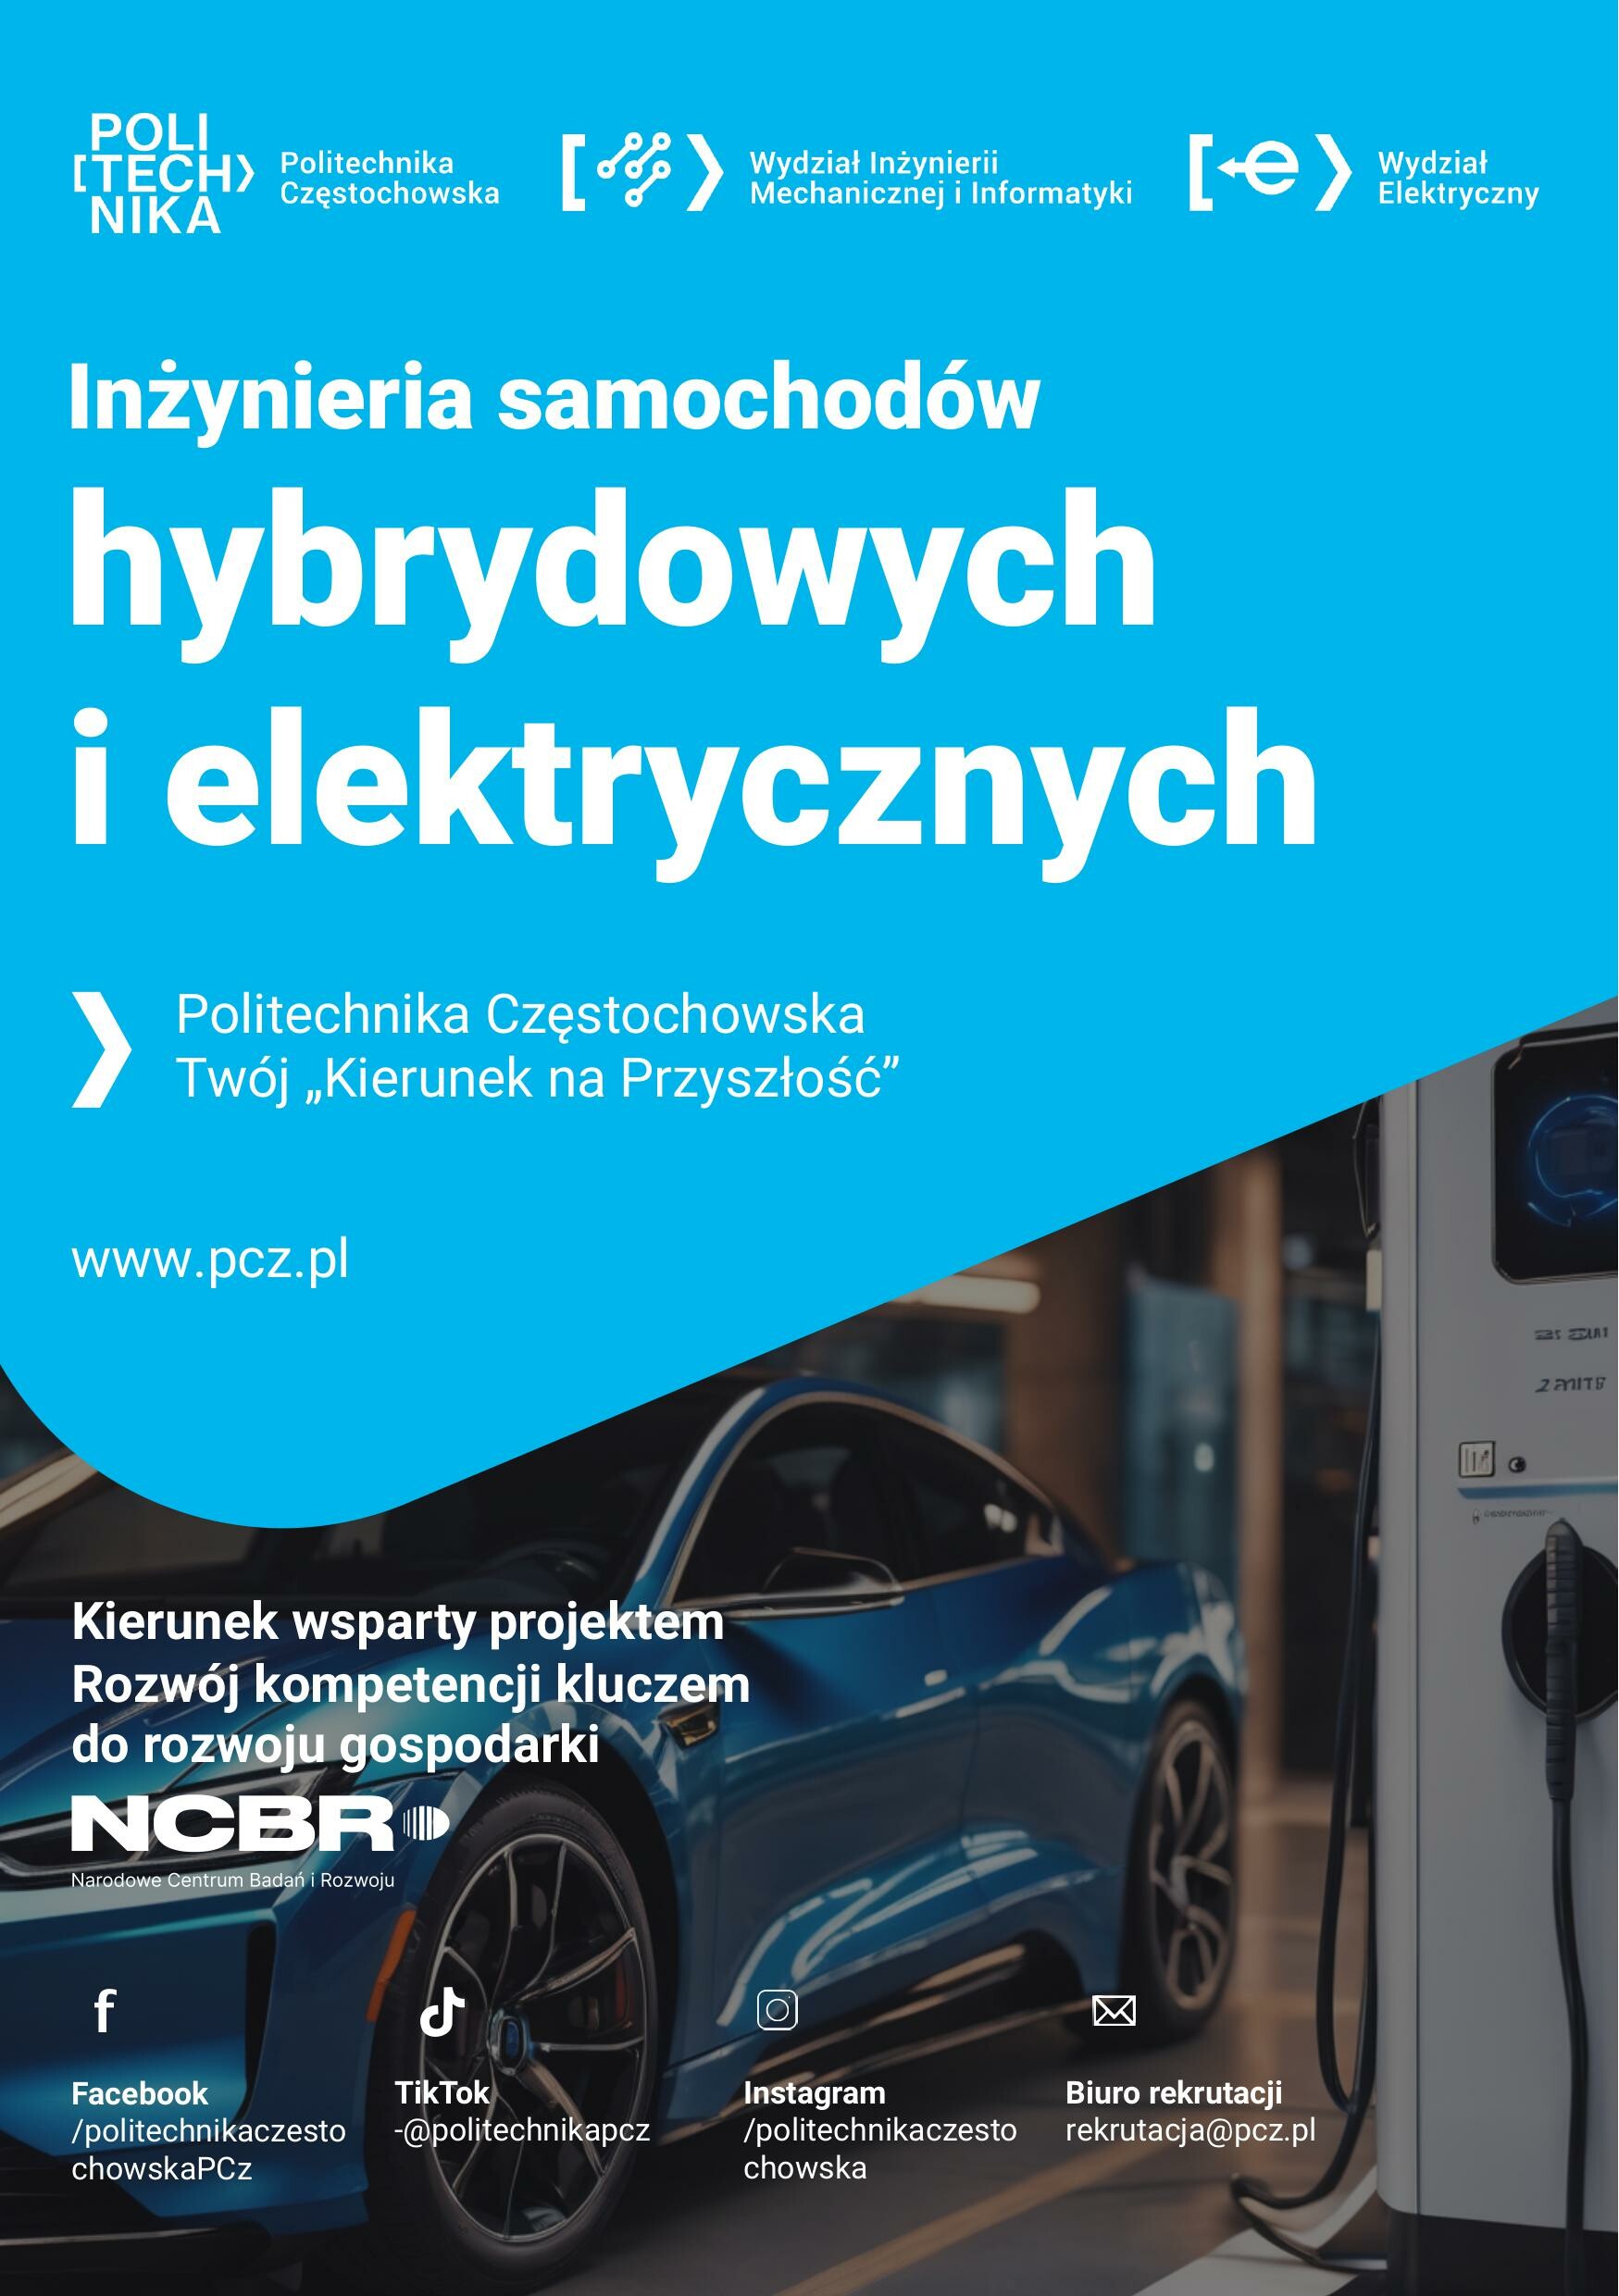 Na Politechnice Częstochowskiej, po konsultacjach z przedstawicielami firm motoryzacyjnych, powstał interdyscyplinarny kierunku Inżynierii Samochodów Hybrydowych i Elektrycznych (ISHiE).